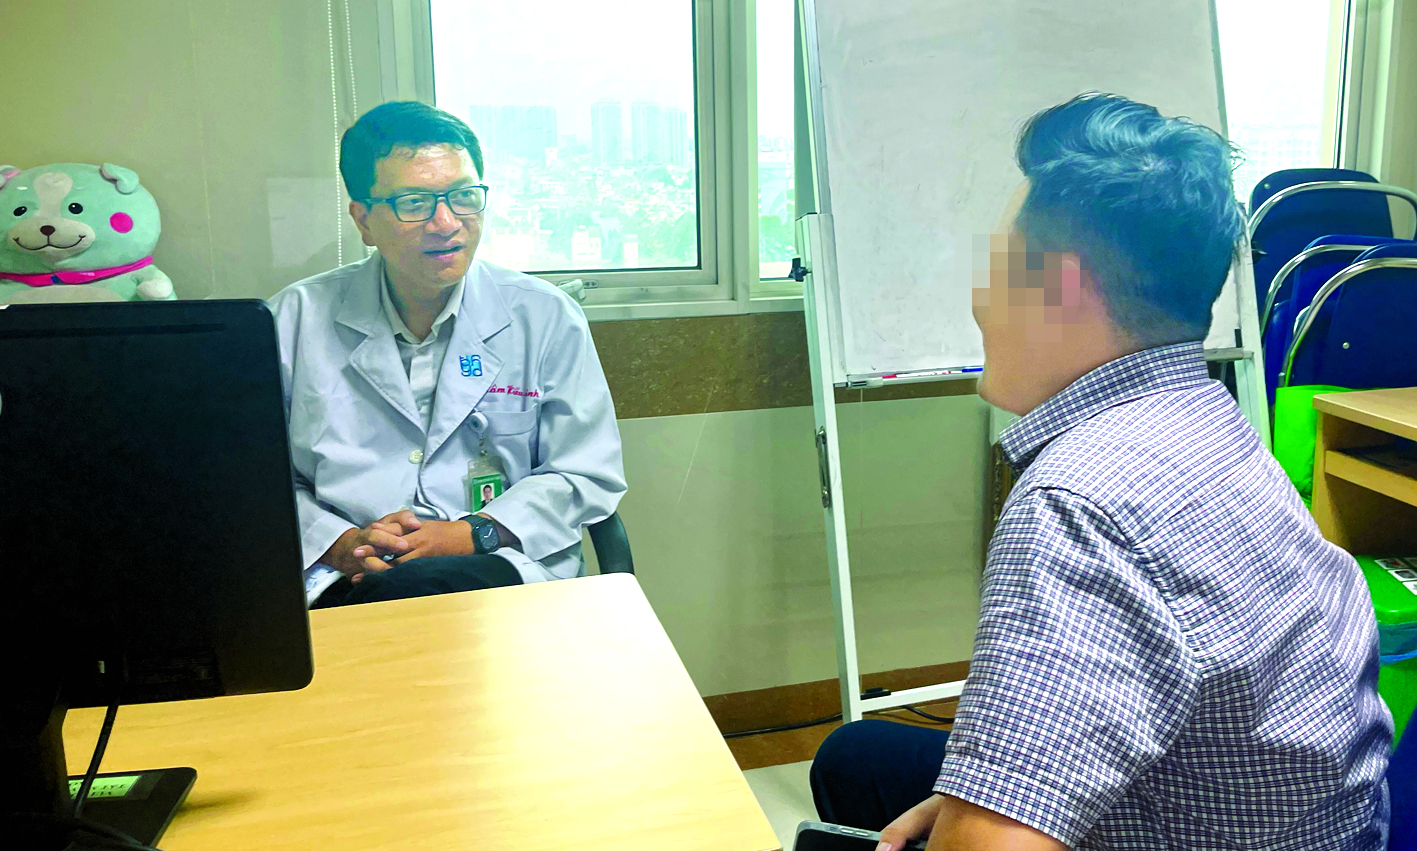 Bác sĩ  Lâm Hiếu Minh đang tư vấn tâm lý cho một trường hợp tại Phòng khám Tâm lý Bệnh viện Đại học y dược TPHCM